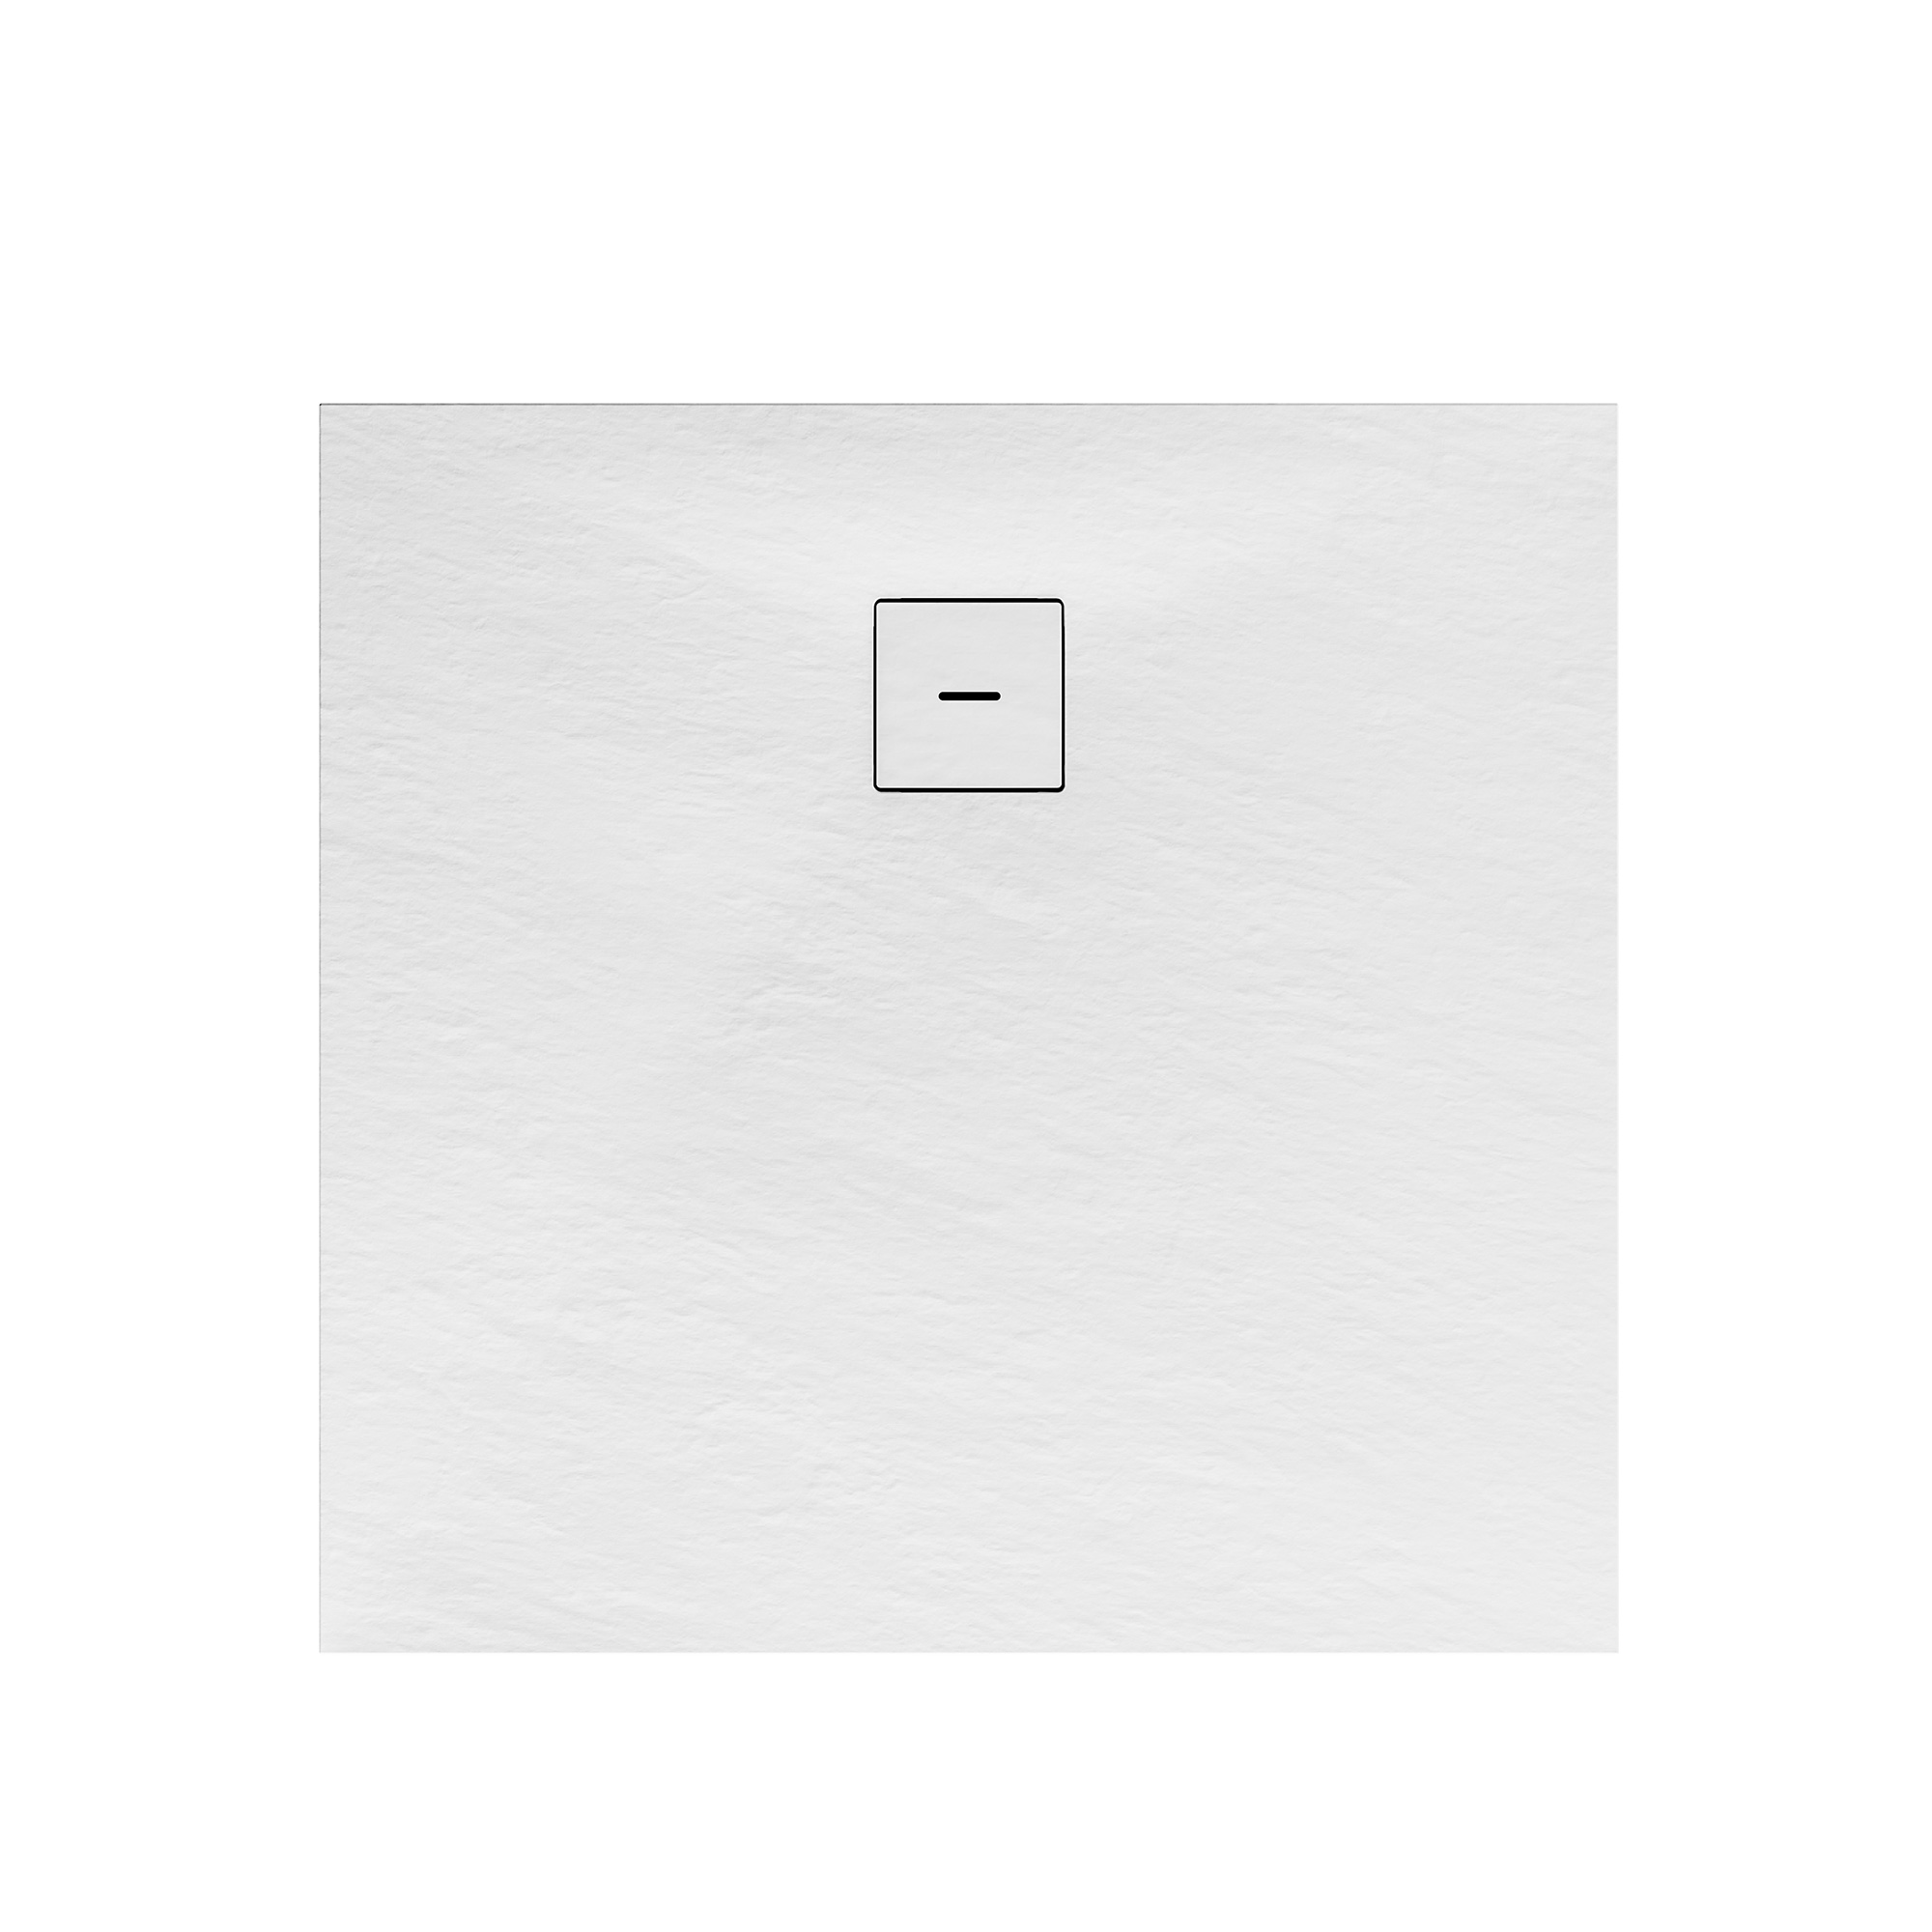 Duschwanne, Mineralguss, flach, weiß, quadratisch, 100 x 100 x 4 cm + product picture